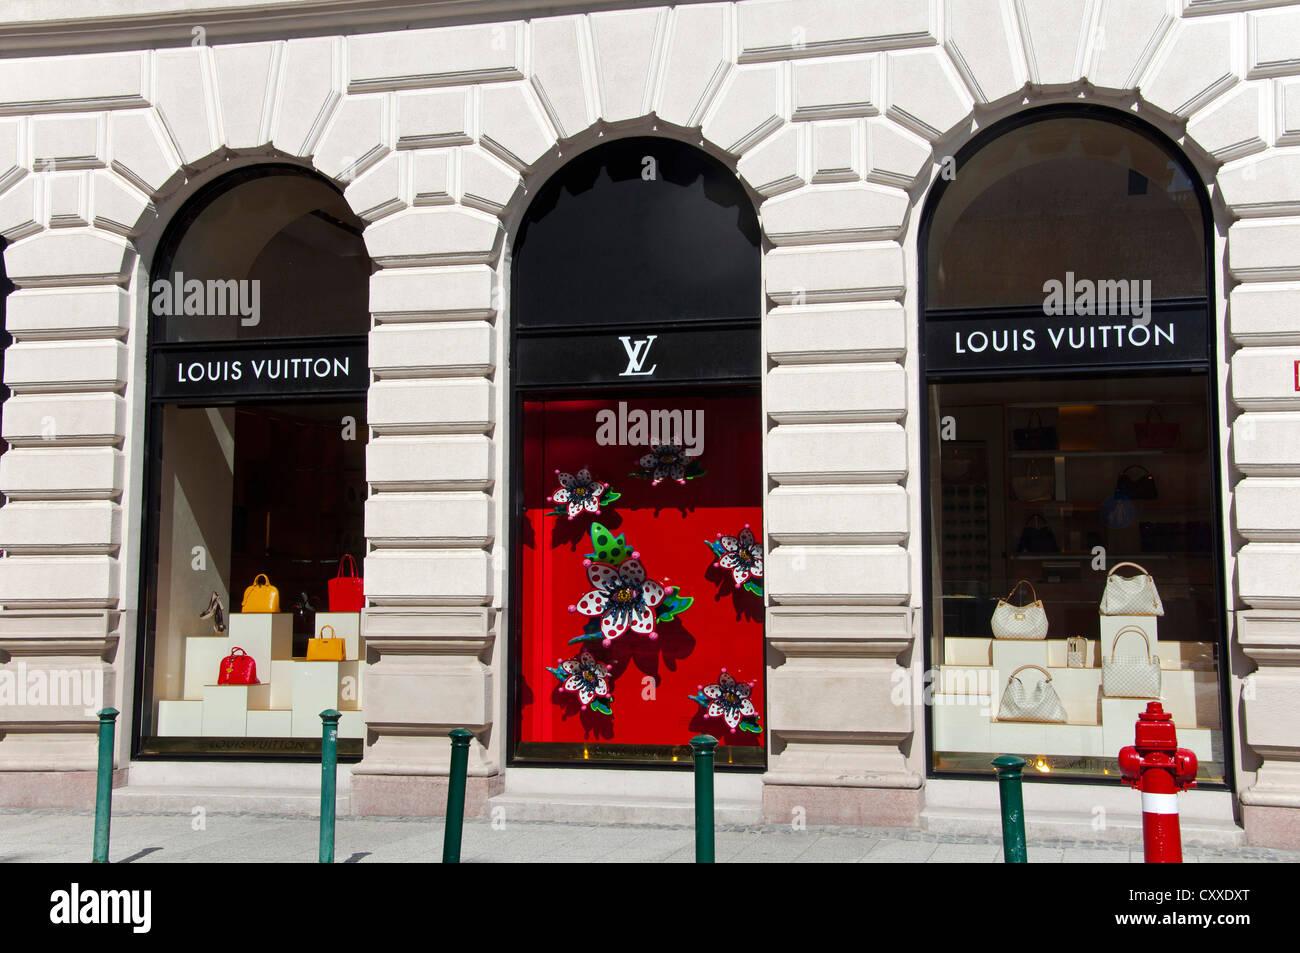 Almacén de Louis Vuitton, Budapest, Hungría Fotografía de stock - Alamy